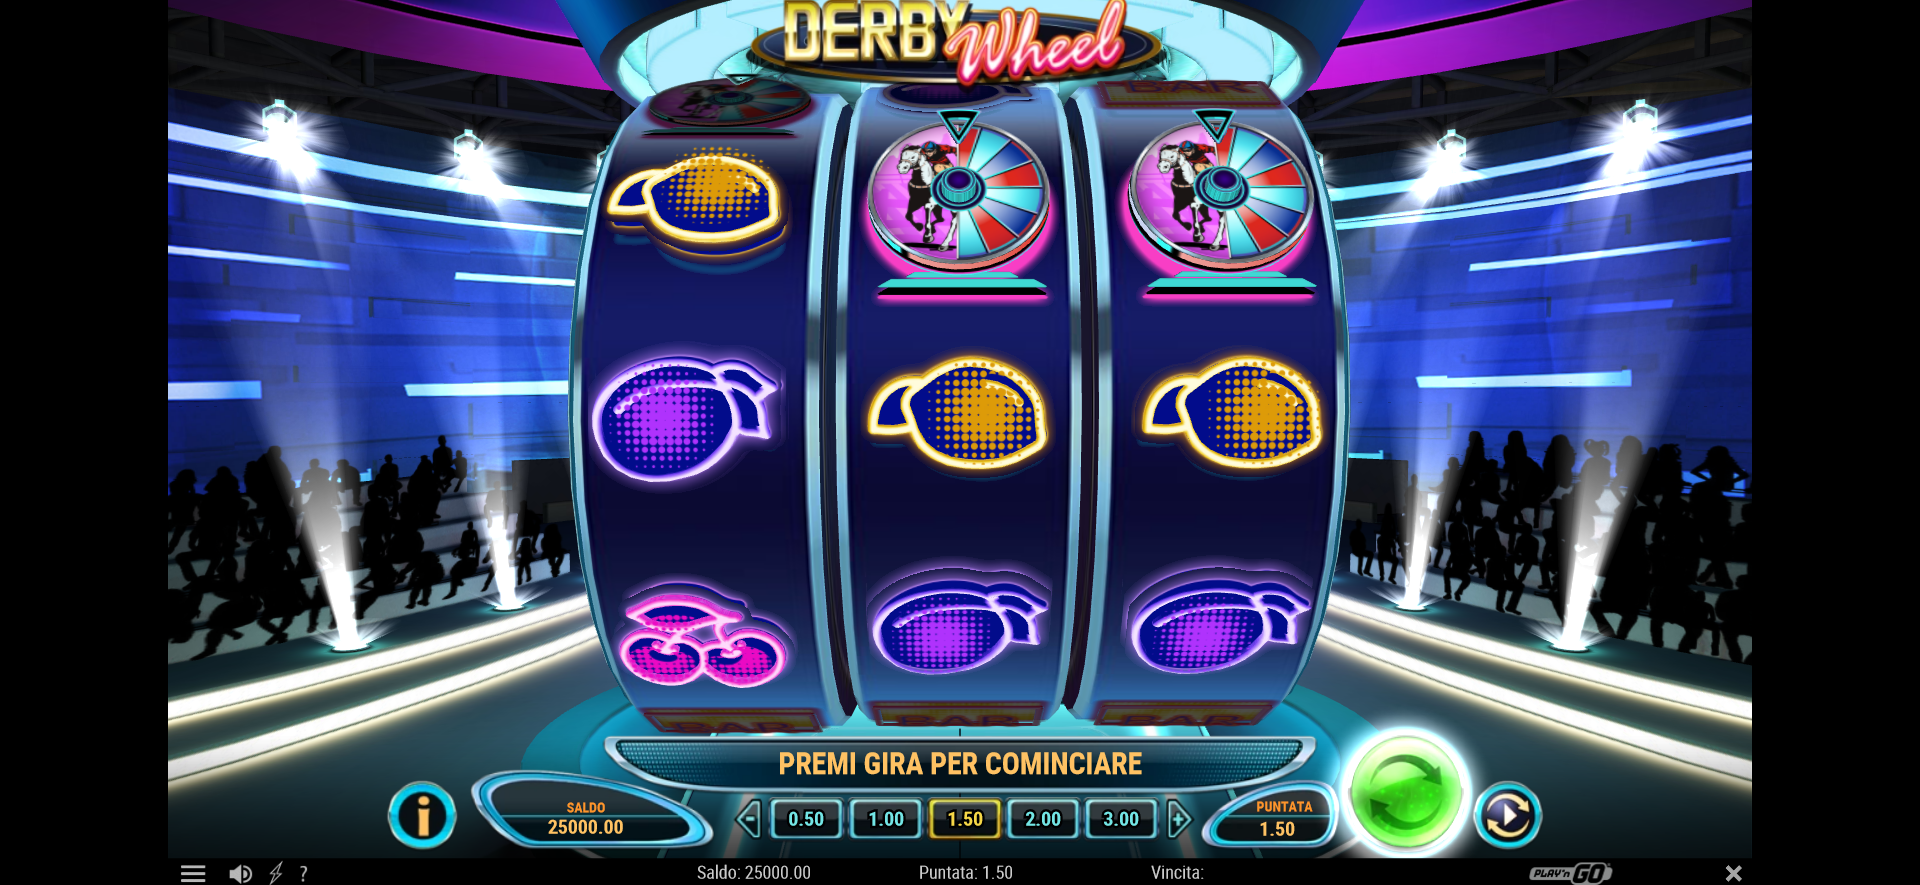 schermata slot machine derby wheel